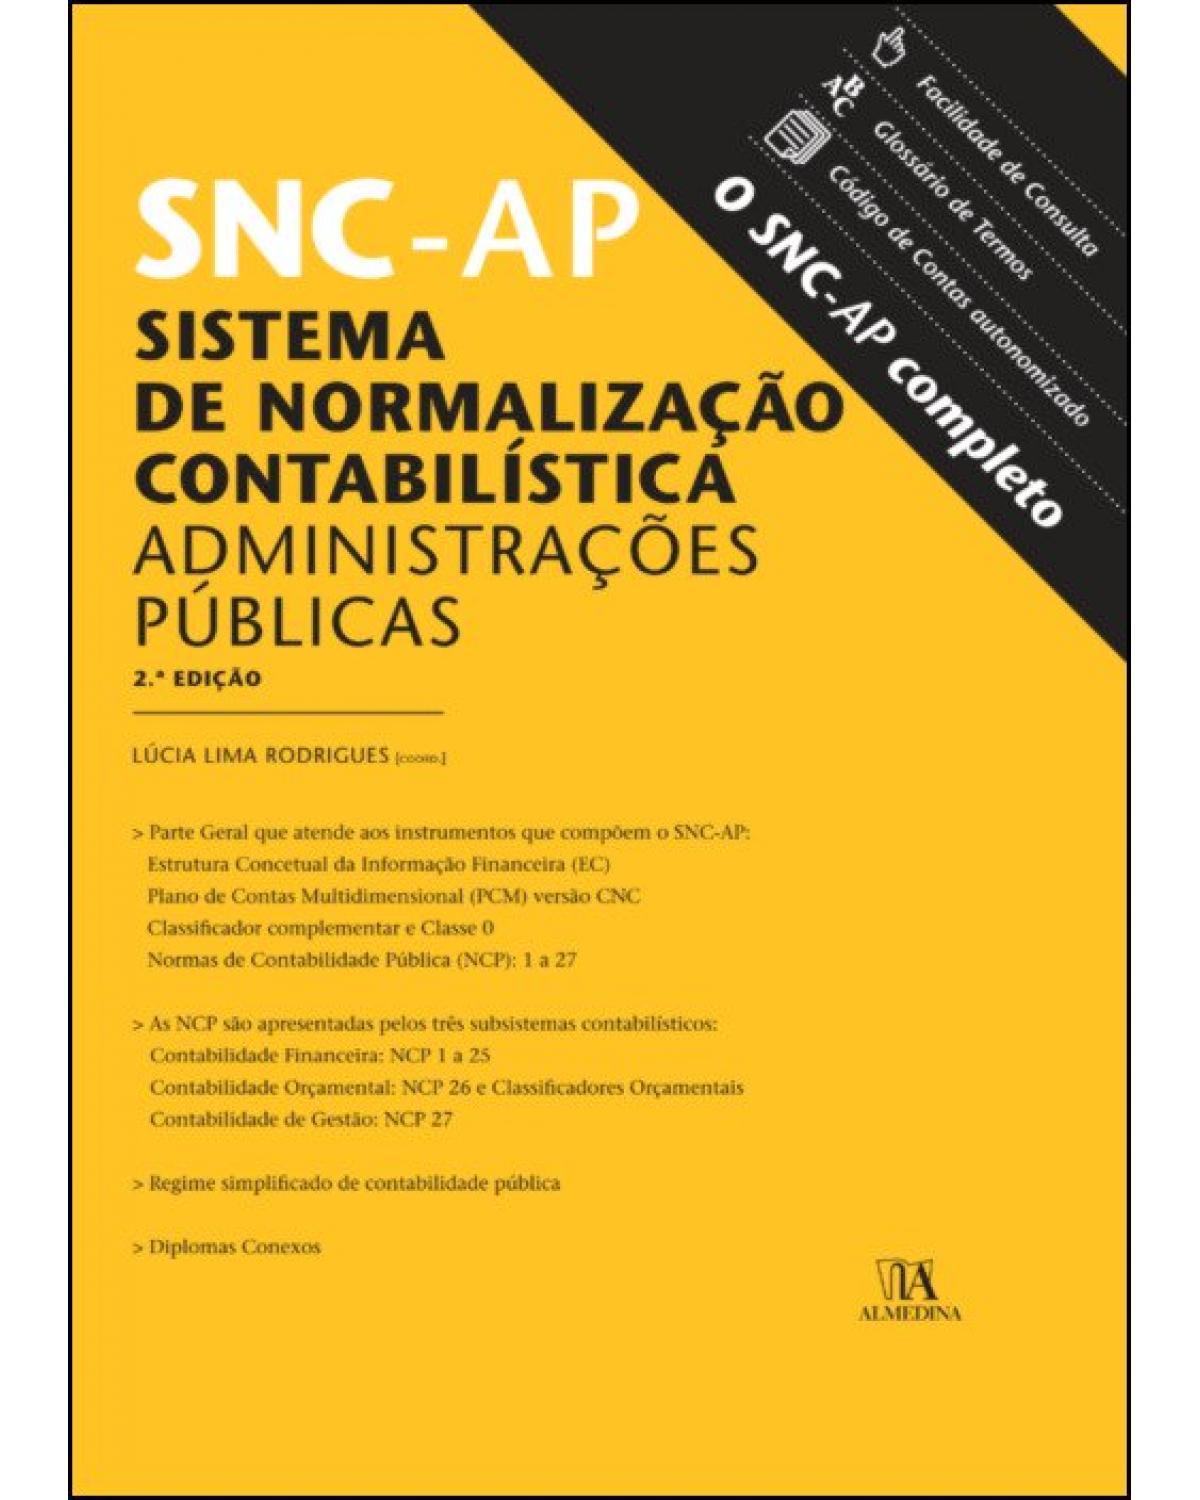 SNC-AP - sistema de normalização contabilística para as administrações públicas - 2ª Edição | 2019